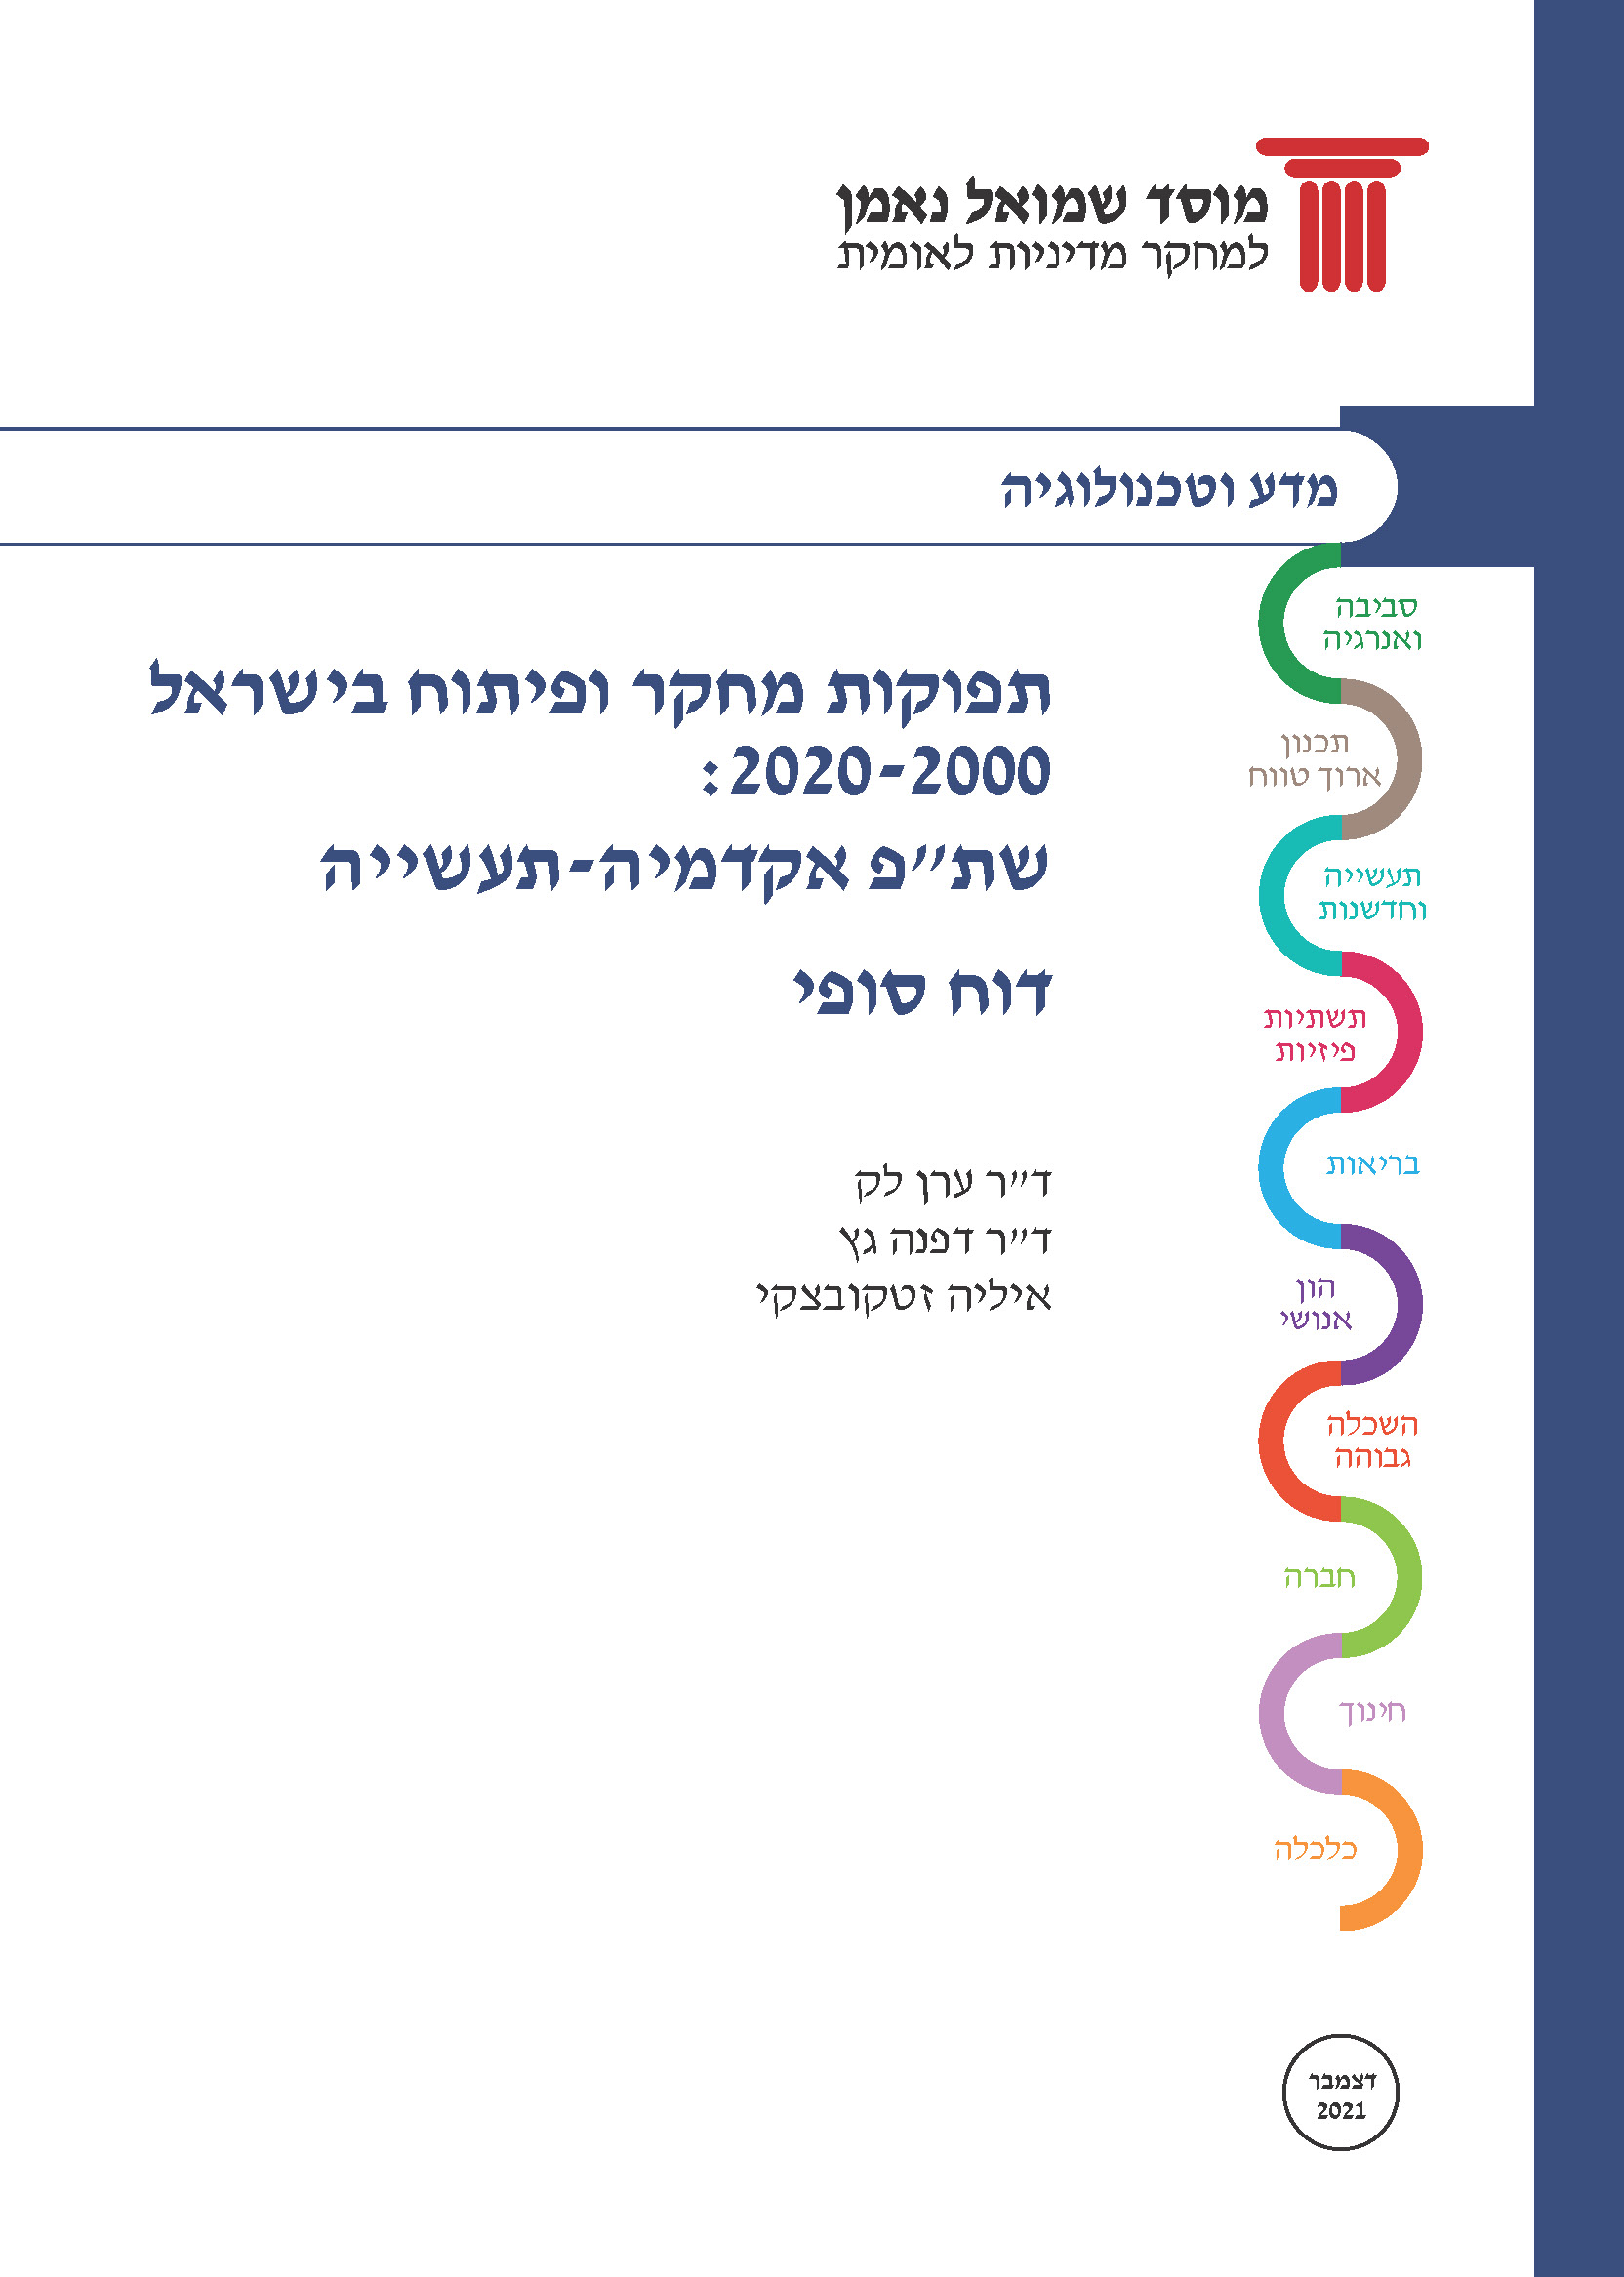 תפוקות מחקר ופיתוח בישראל  – ניתוח שת"פ אקדמיה-תעשייה בפעילות המצאתית